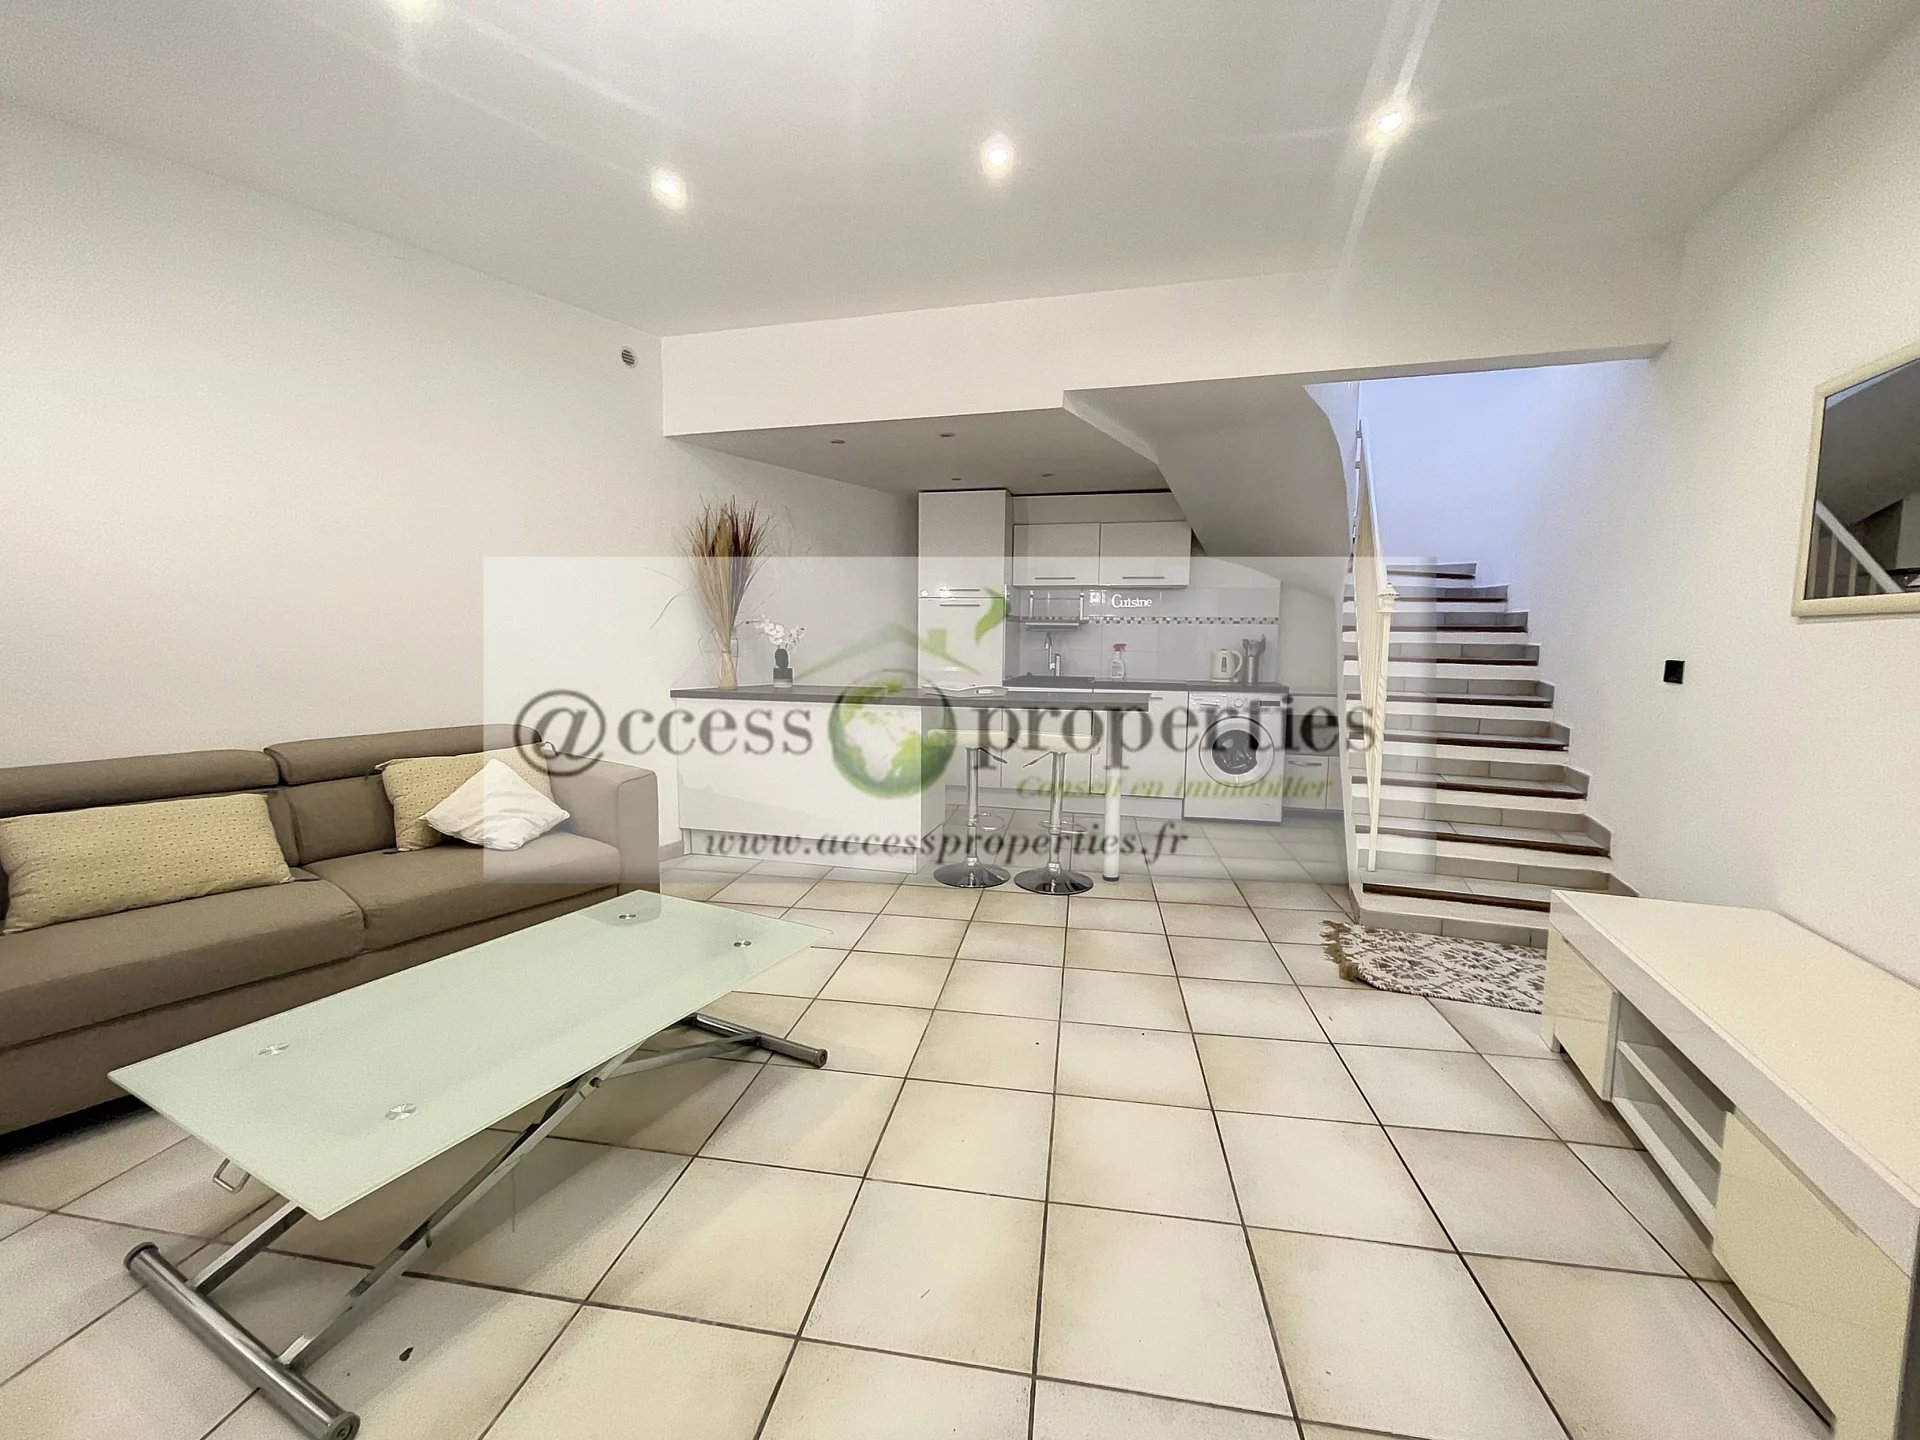 Vente Maison 48m² 2 Pièces à Antibes (06600) - Access Properties